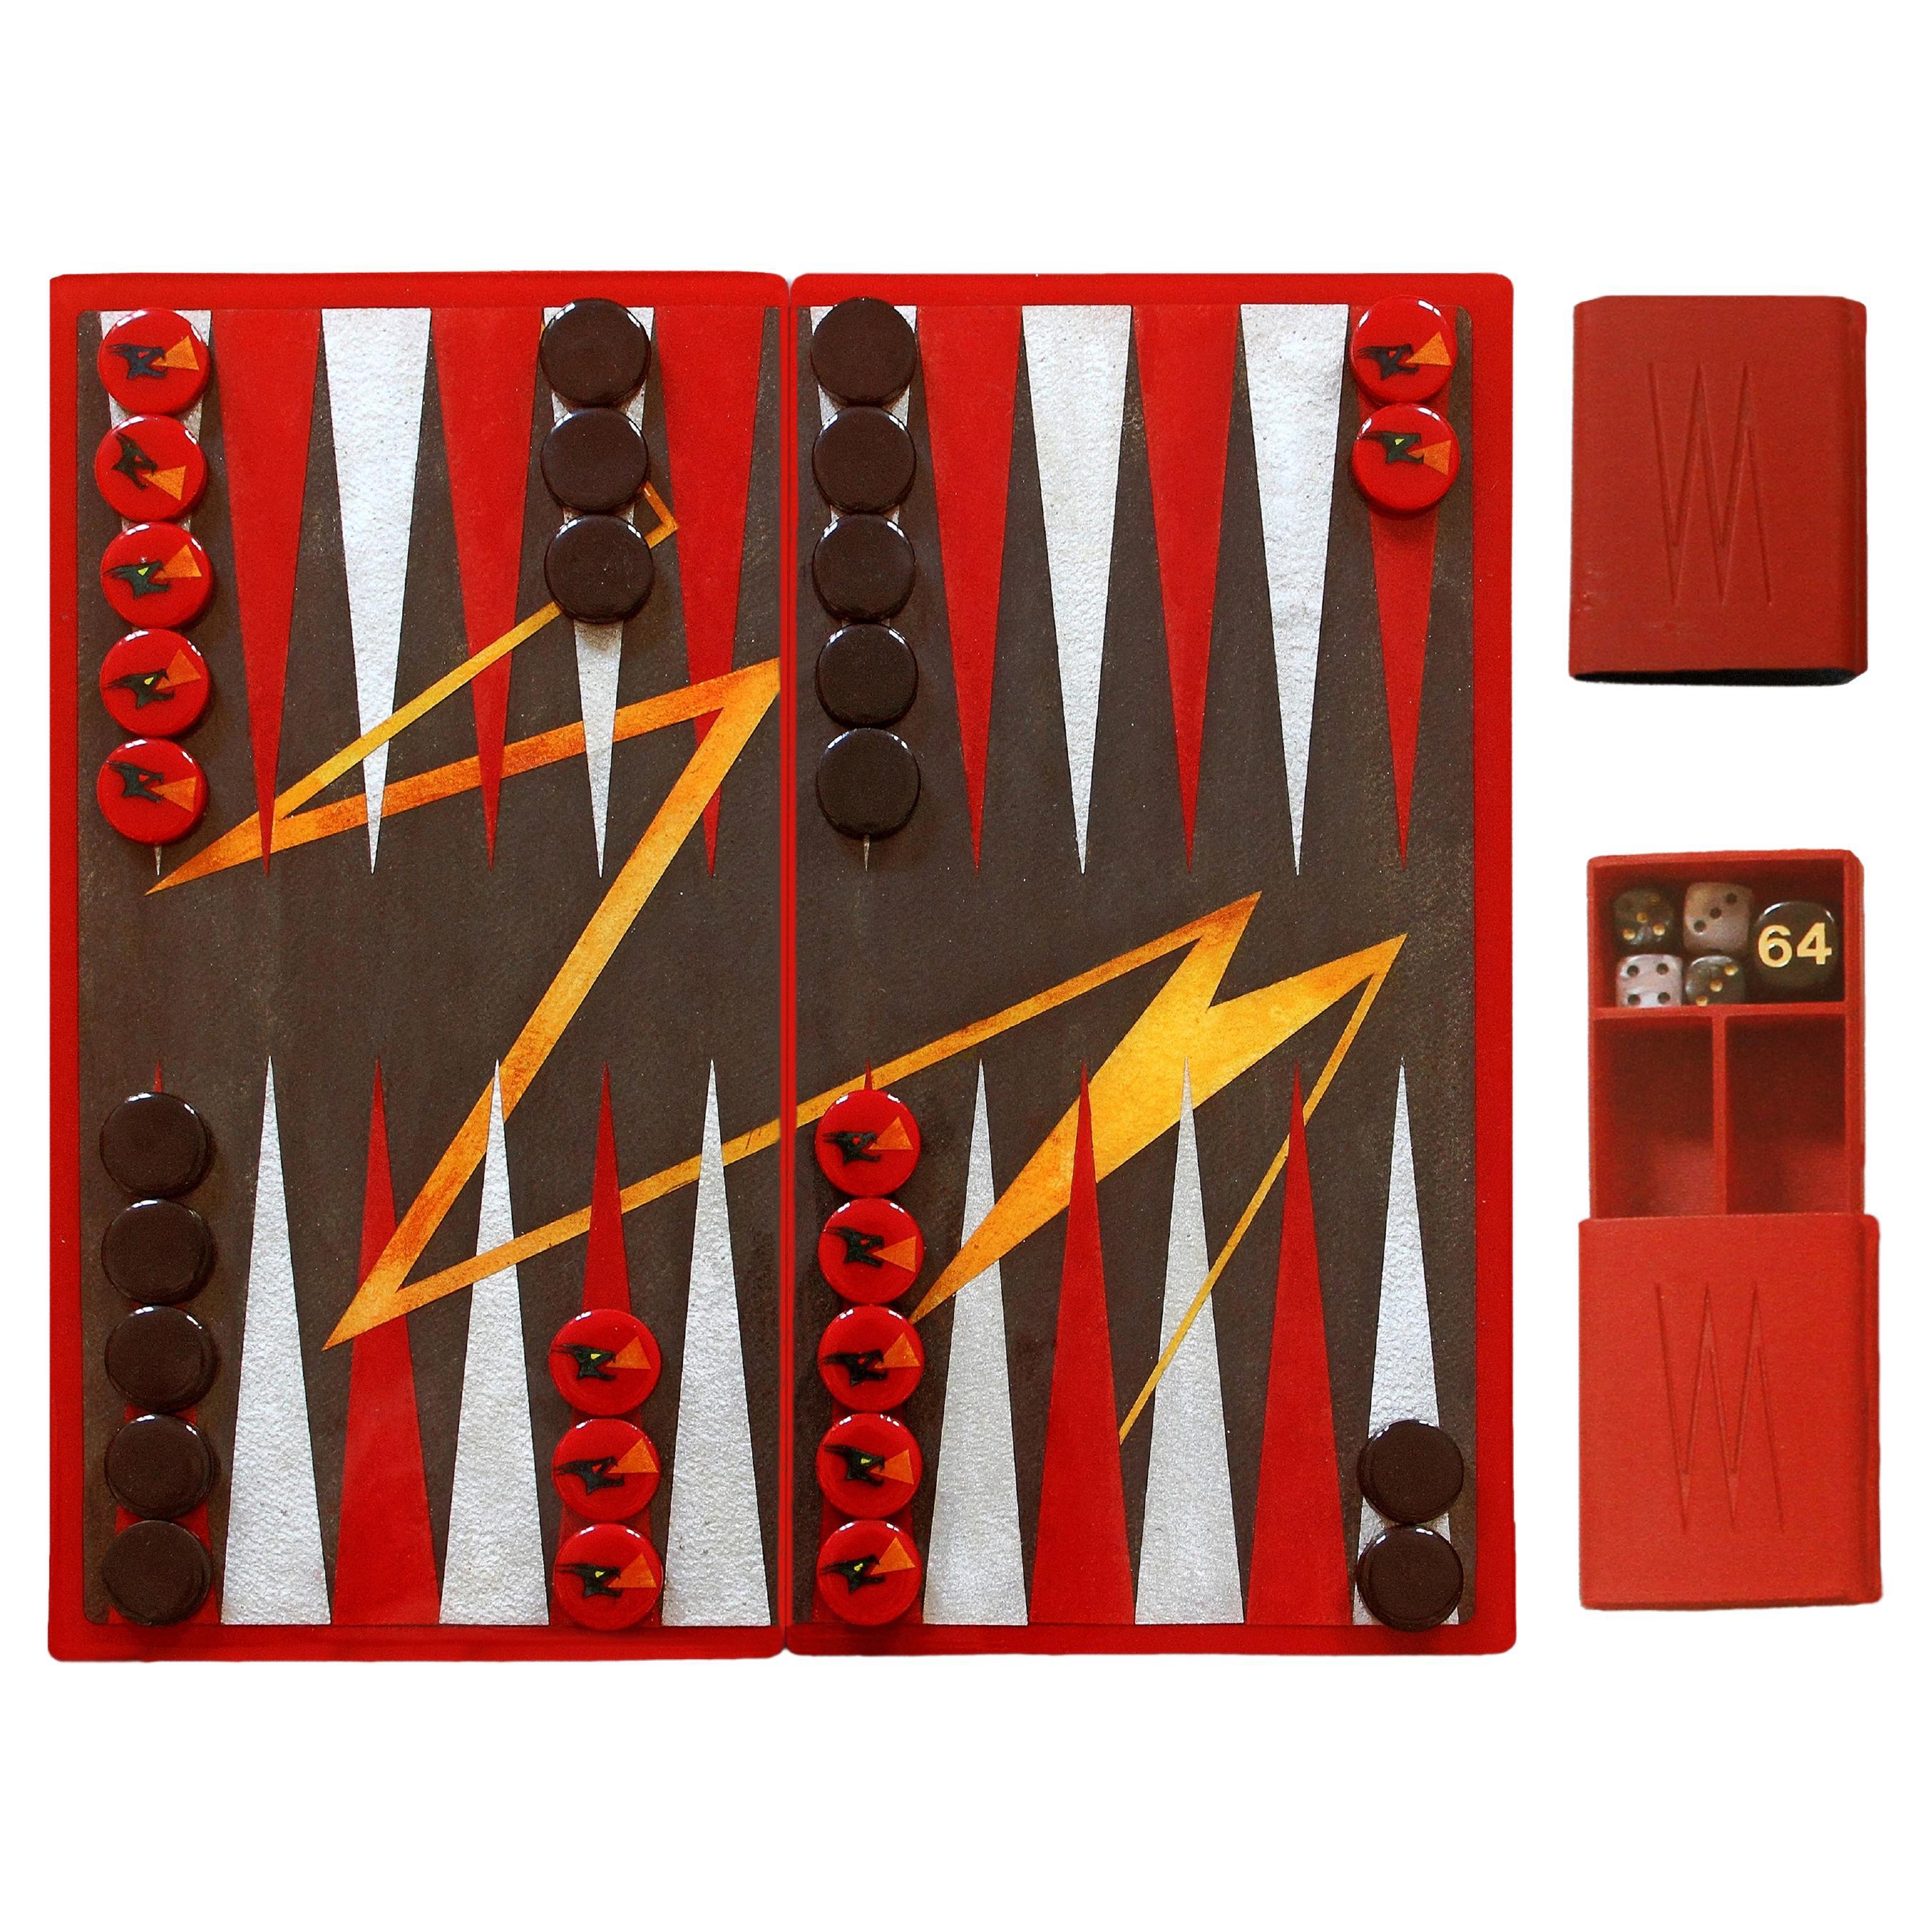 Jeu de backgammon de voyage moderne peint à la main en résine époxy, édition limitée en vente